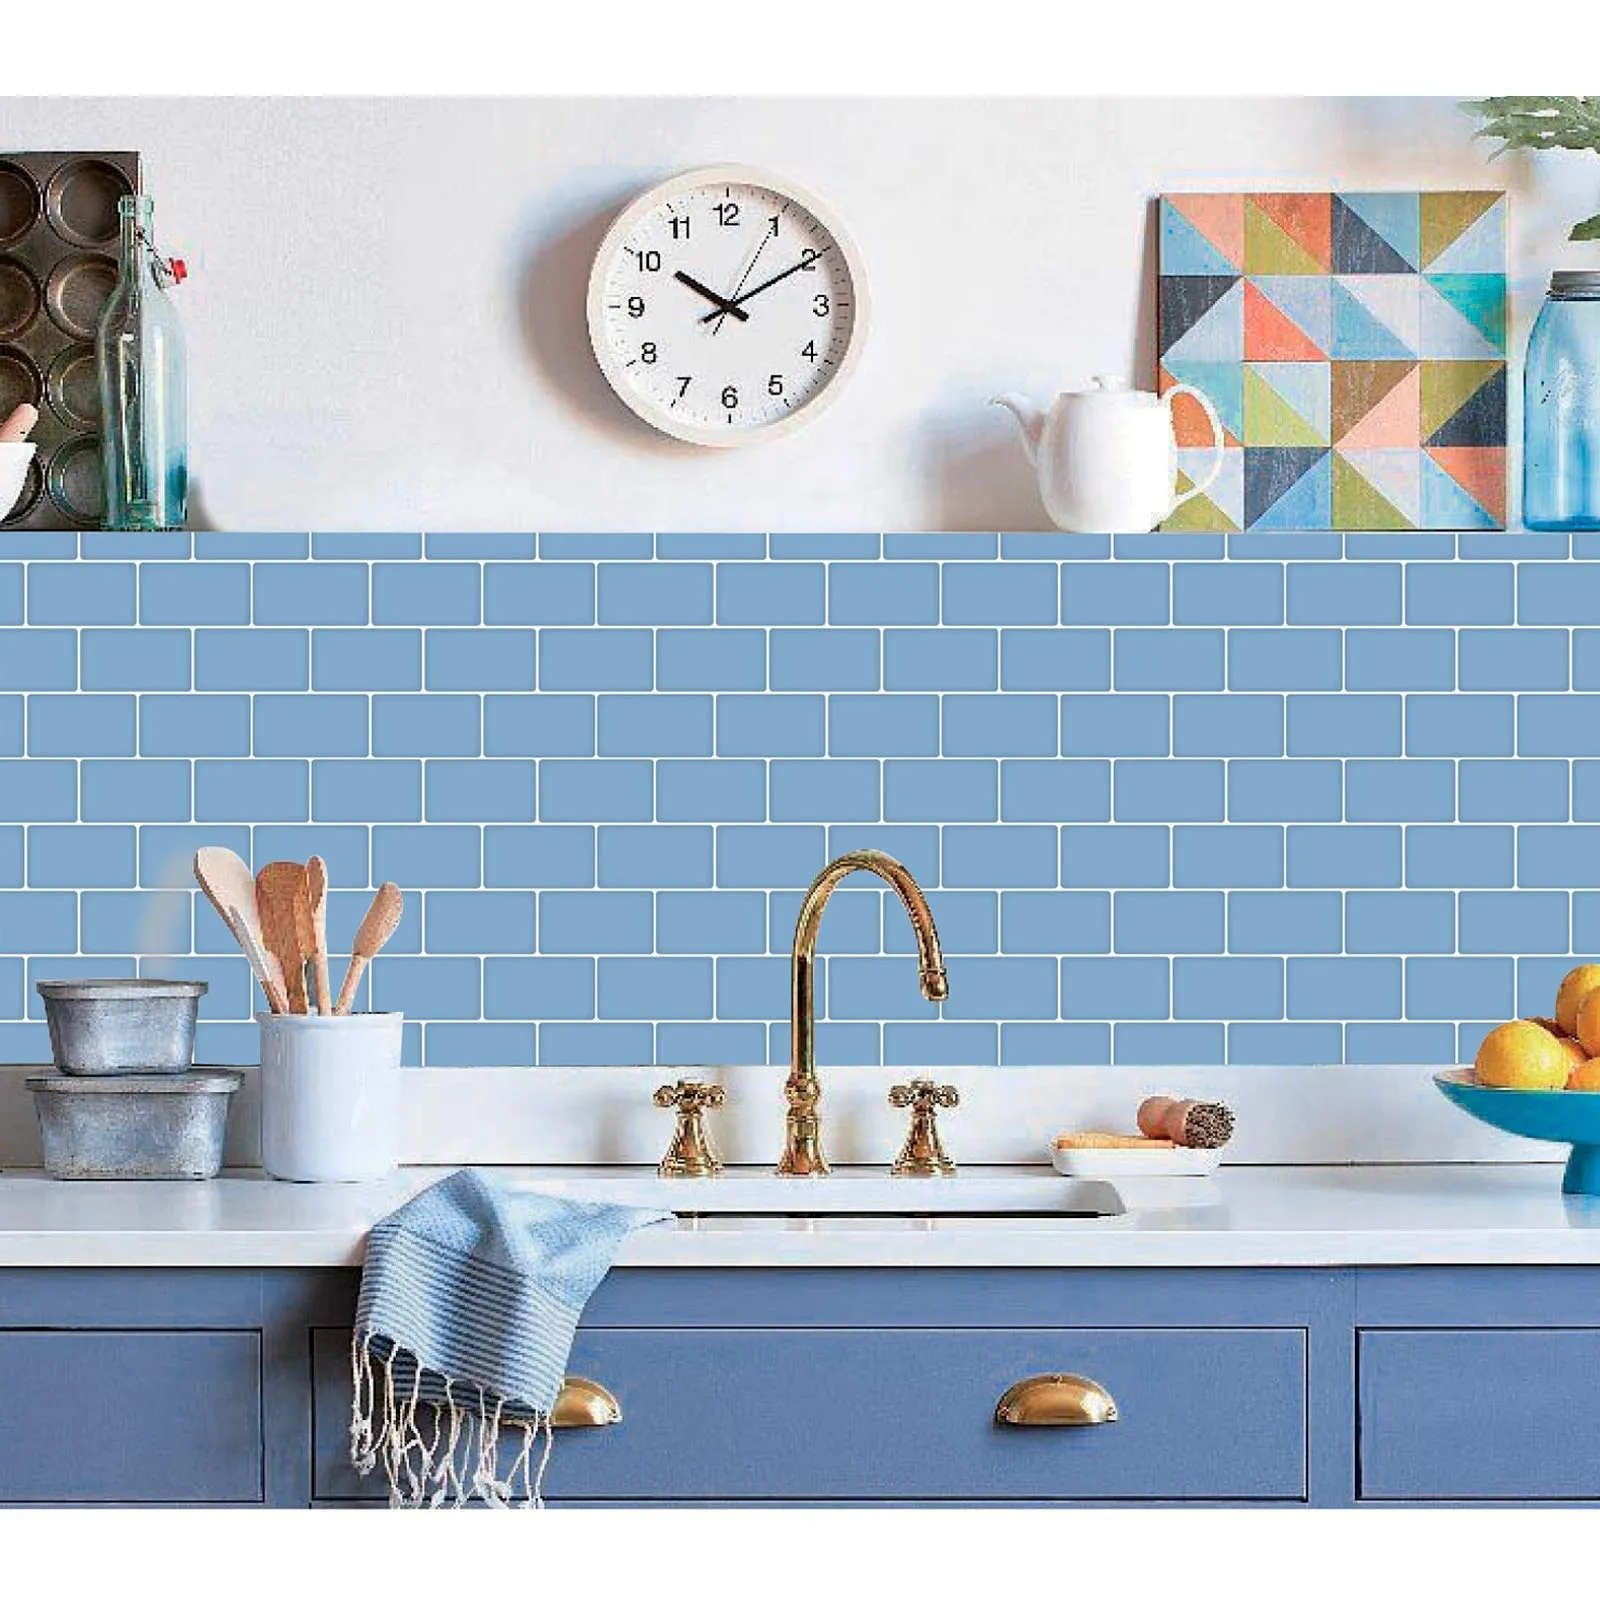 Art3d 30 x 30 cm Backsplash-Fliesen, 3D-Wandaufkleber zum Abziehen und Aufkleben, für Küche, Badezimmer, Schlafzimmer, Waschküche, glänzendes Hellblau, Tapeten (10 Blatt)